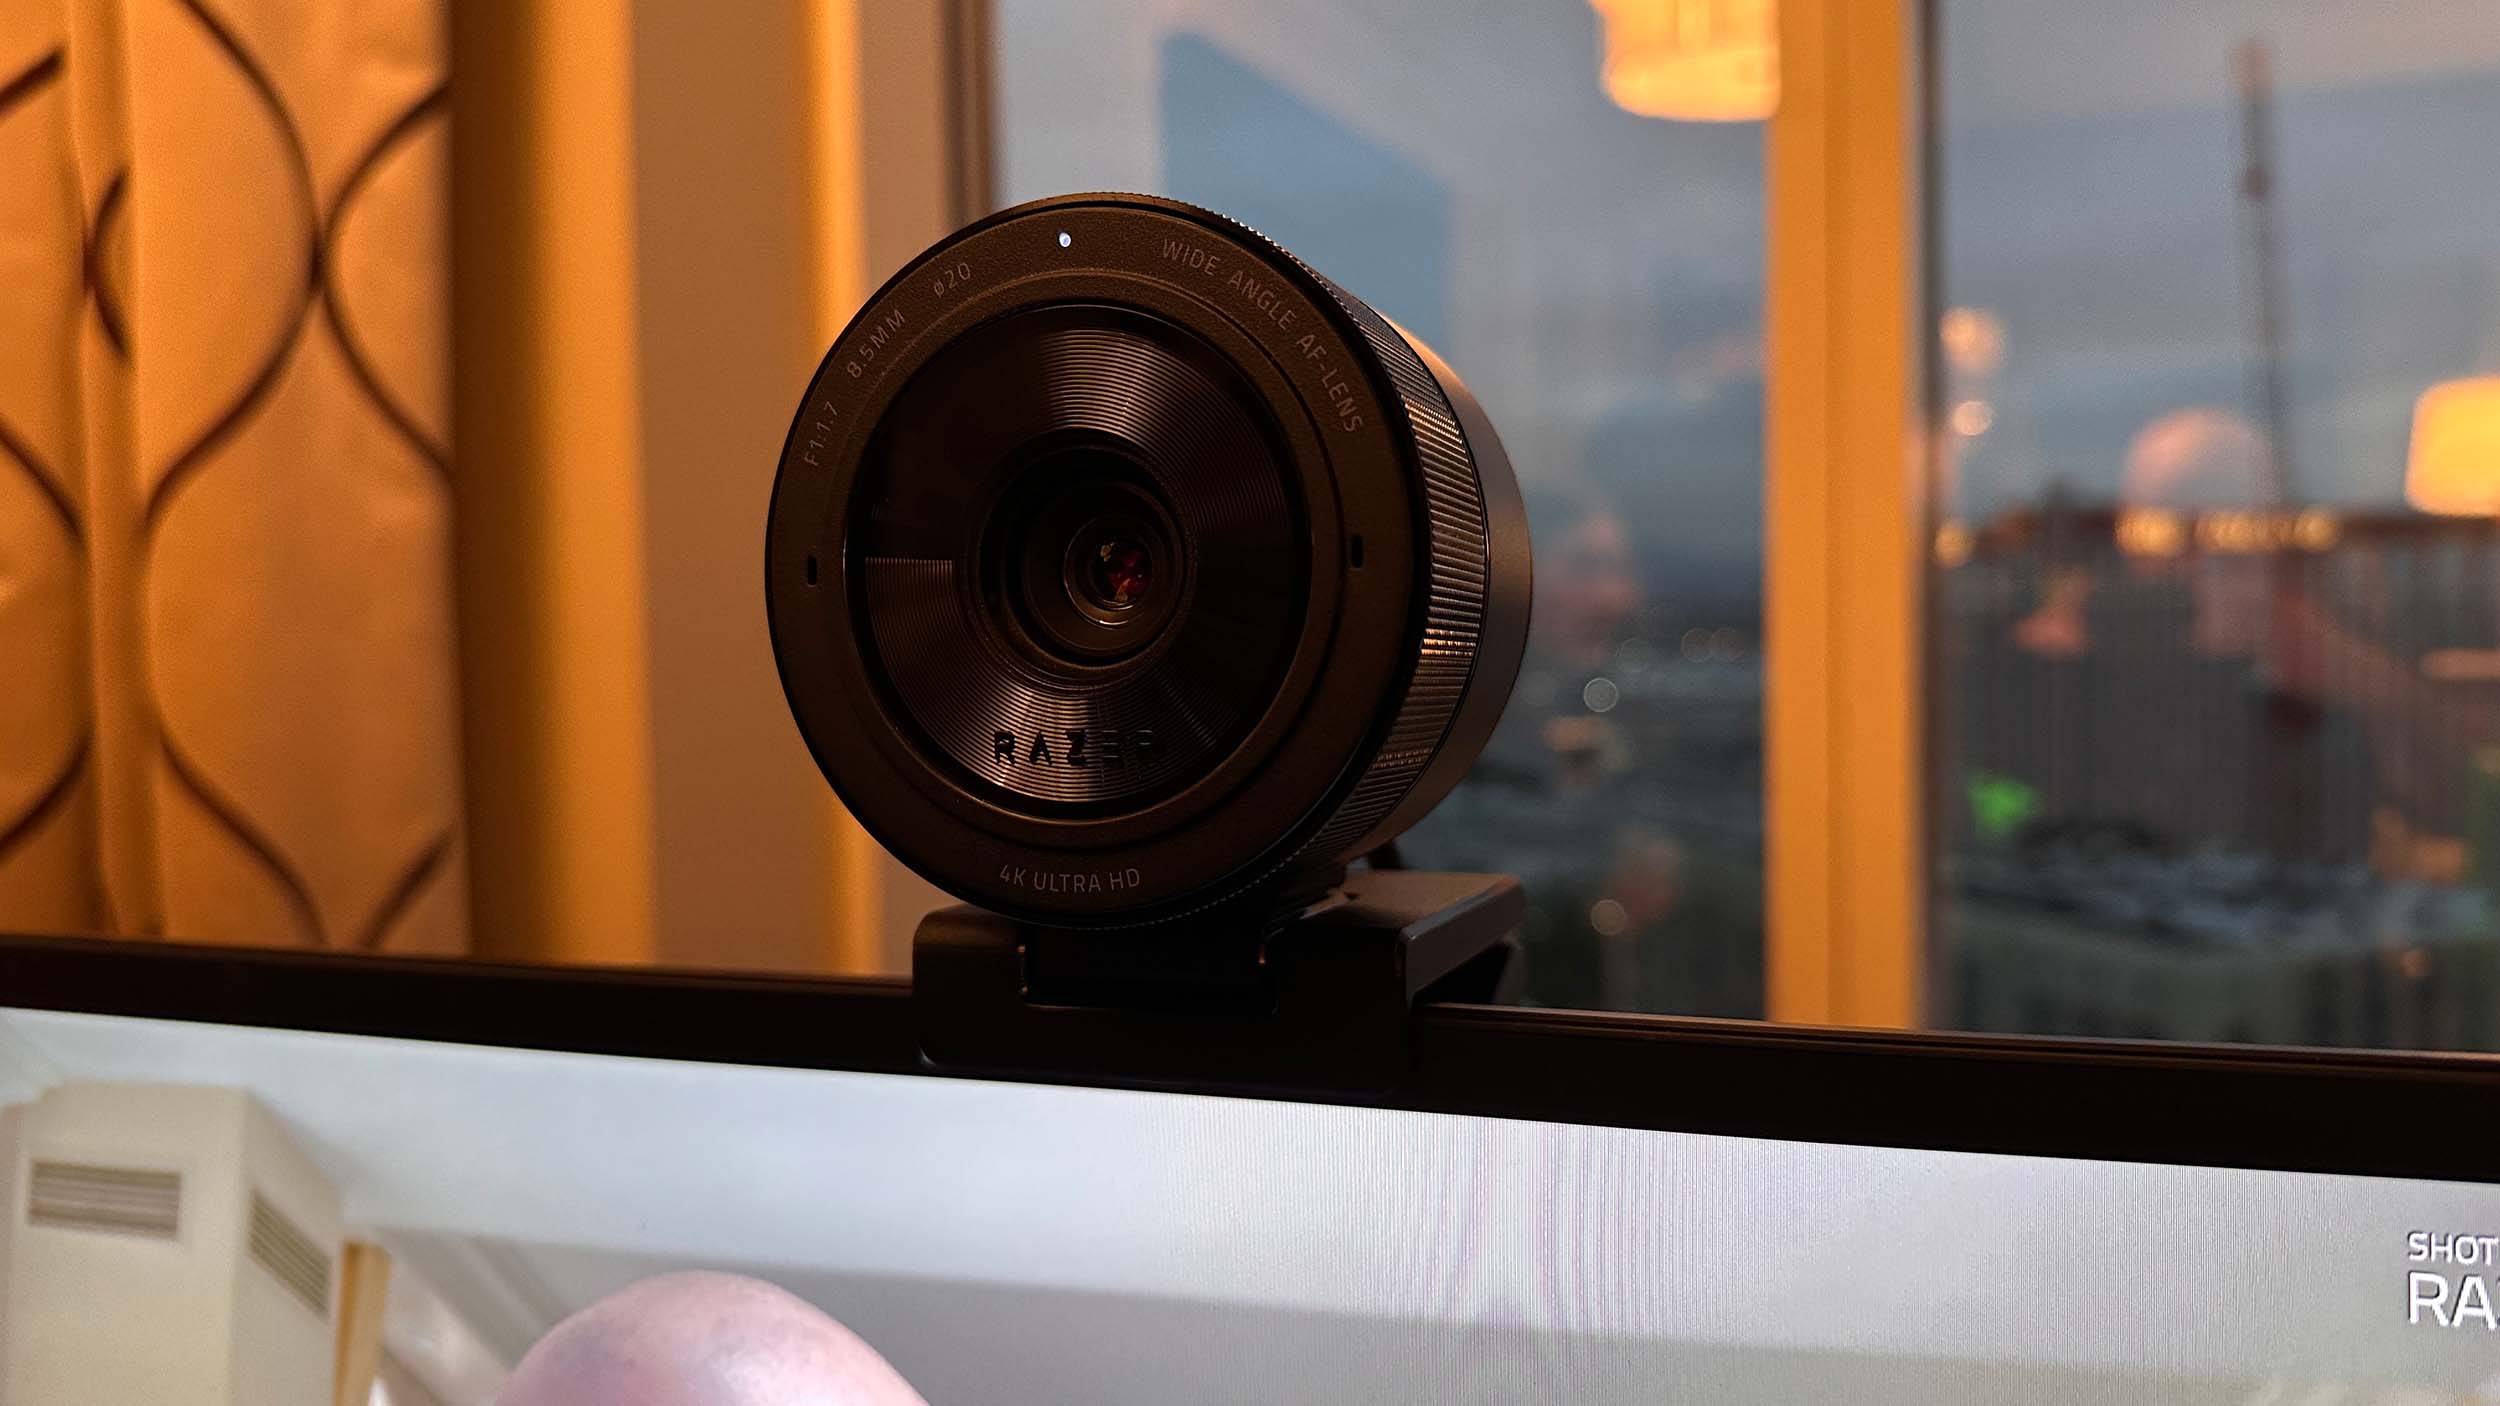 Razer Kiyo Pro Ultra Review: More Than a Webcam, Less Than a Camera